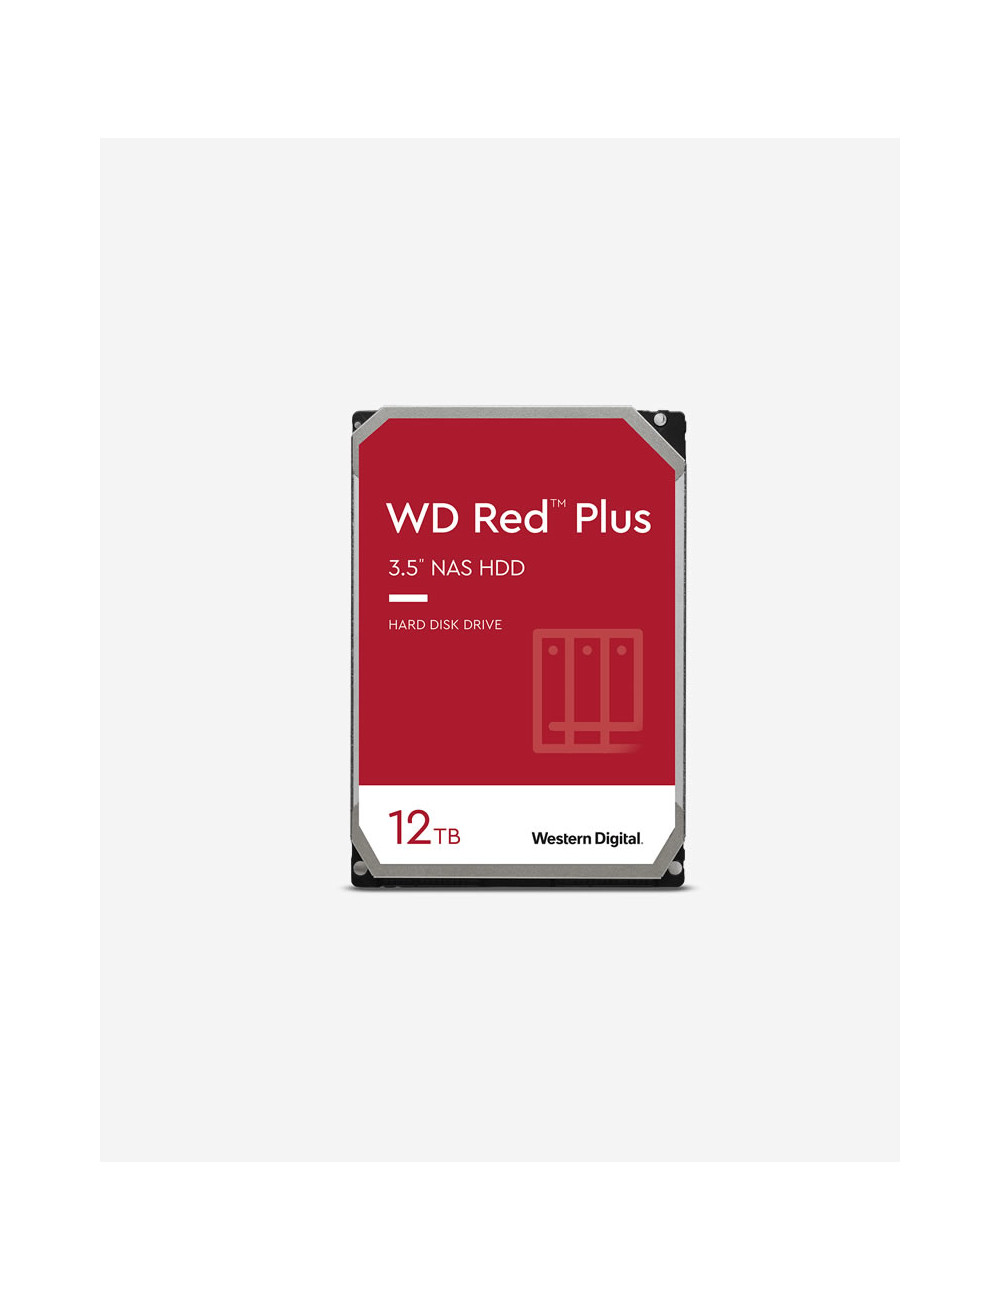 WD RED PLUS 12TB Unidad de disco duro de 3,5"